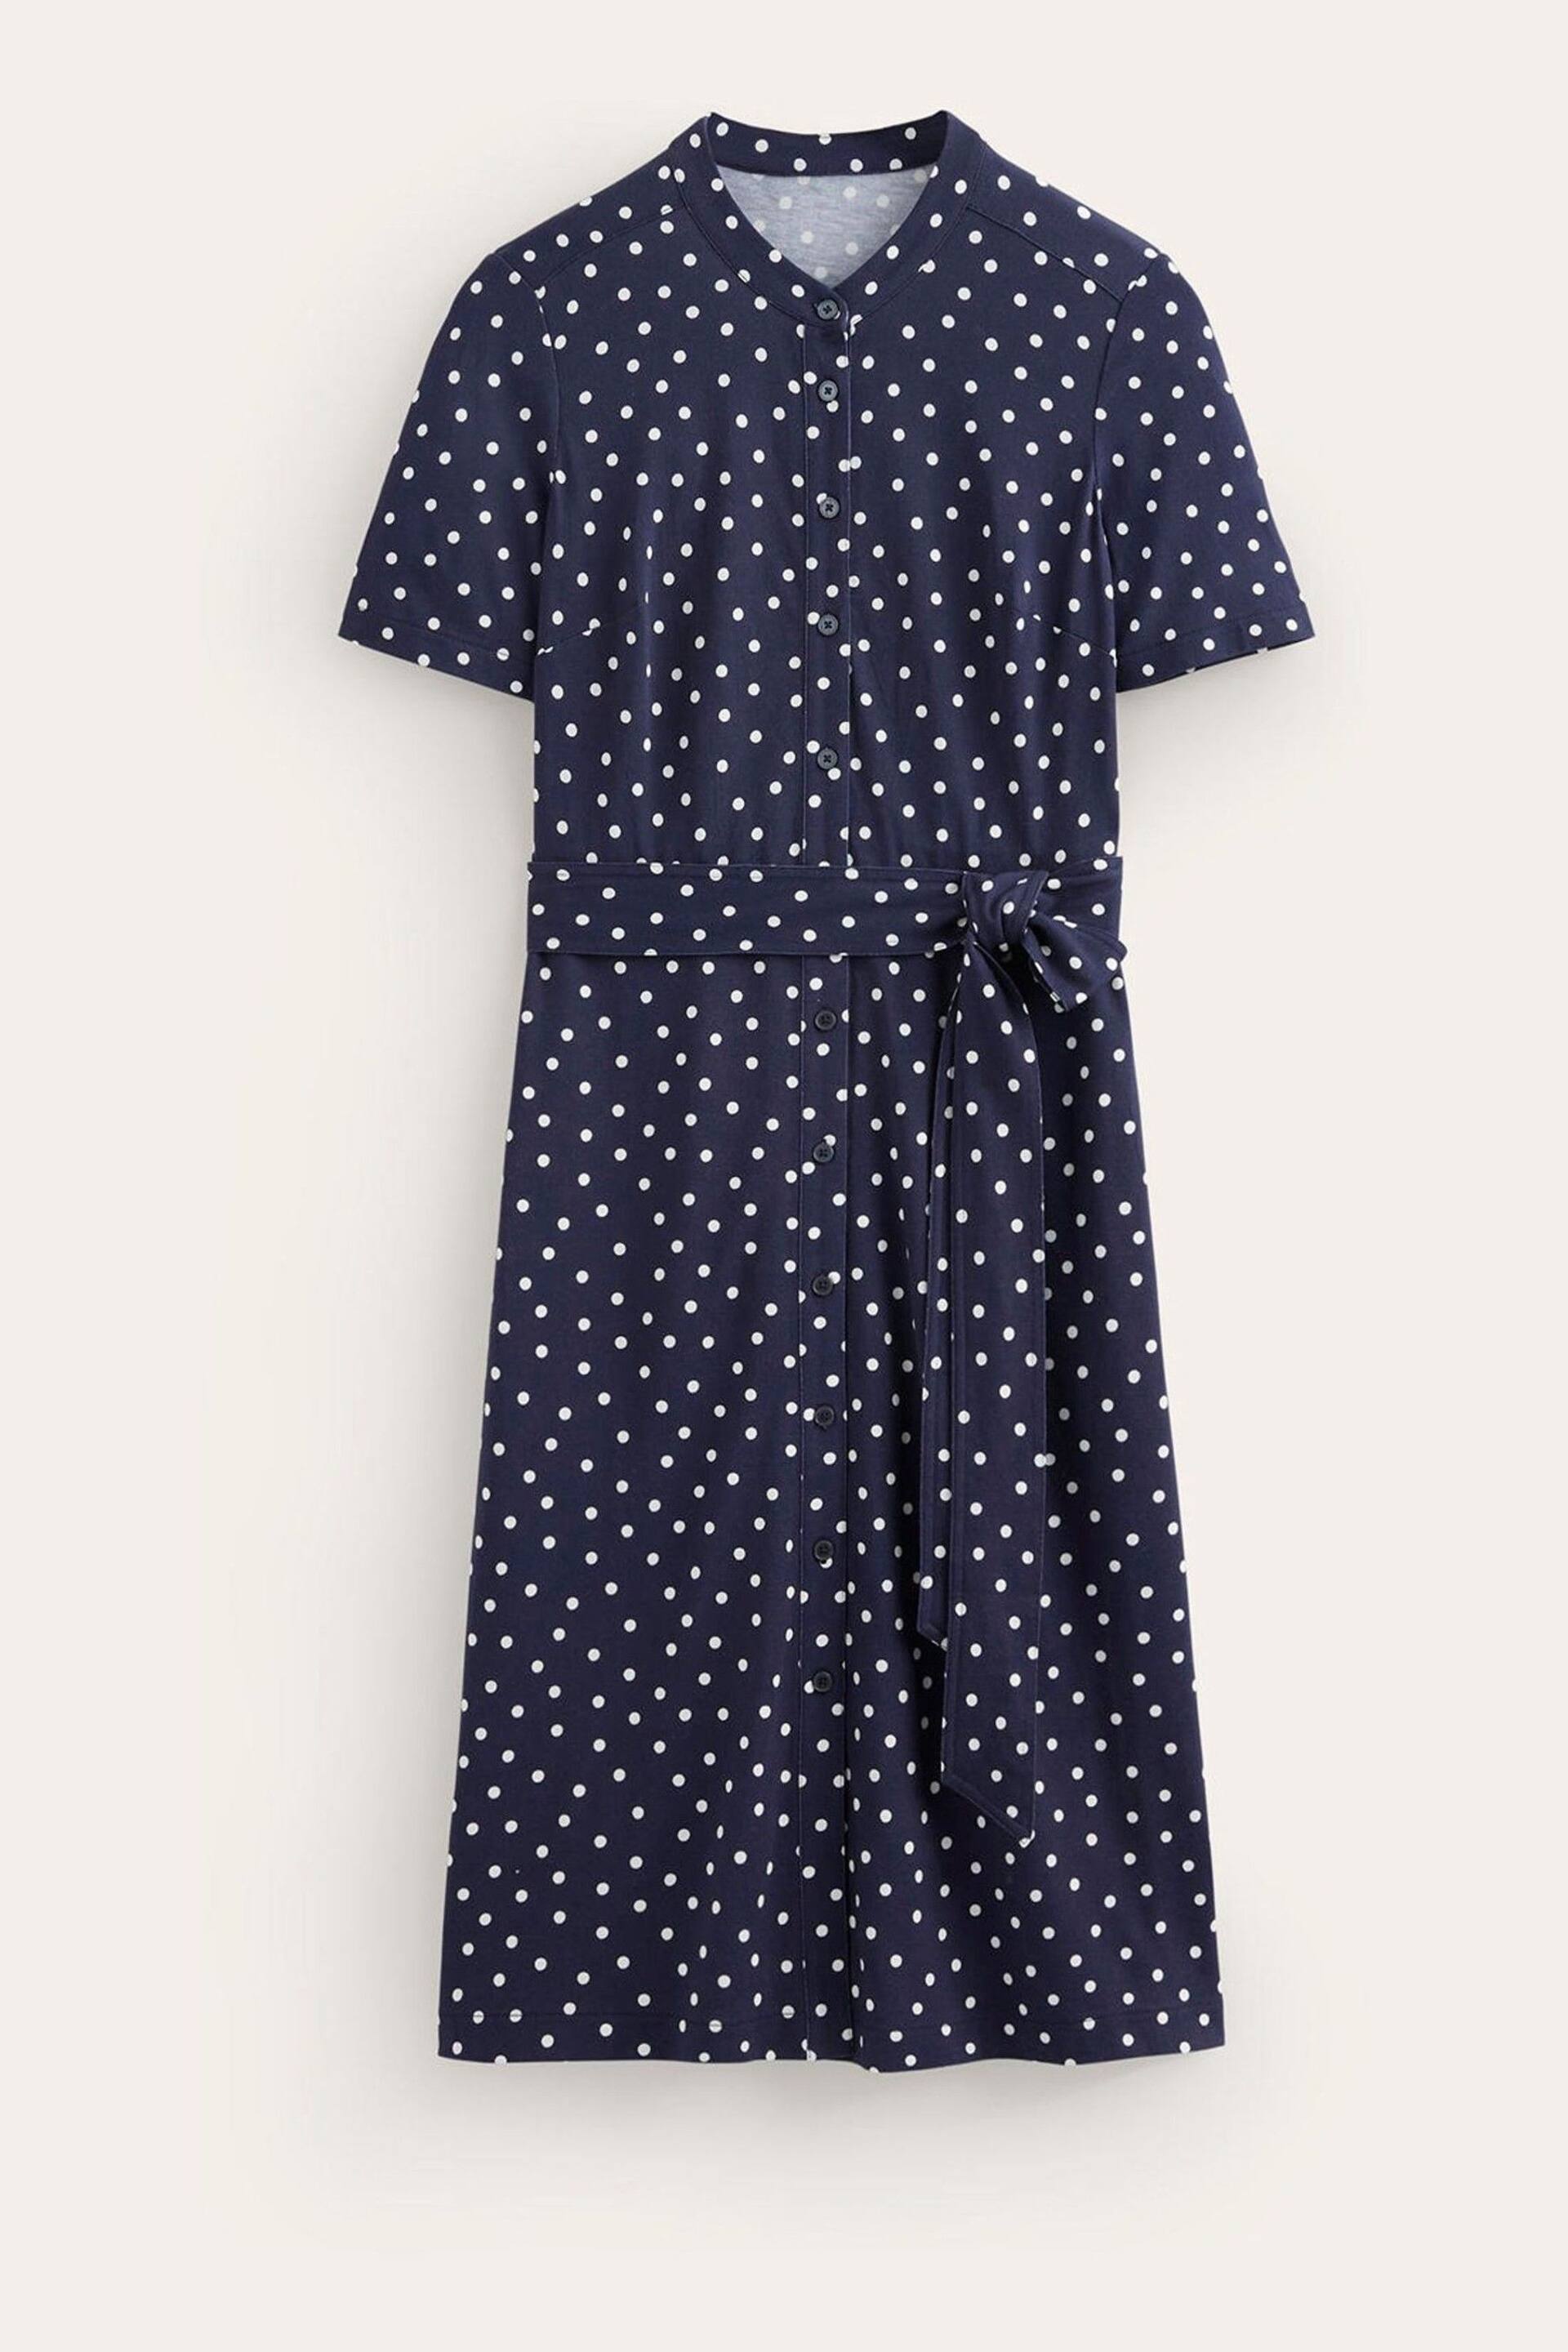 Boden Blue Petite Julia Short Sleeve Shirt Dress - Image 5 of 5